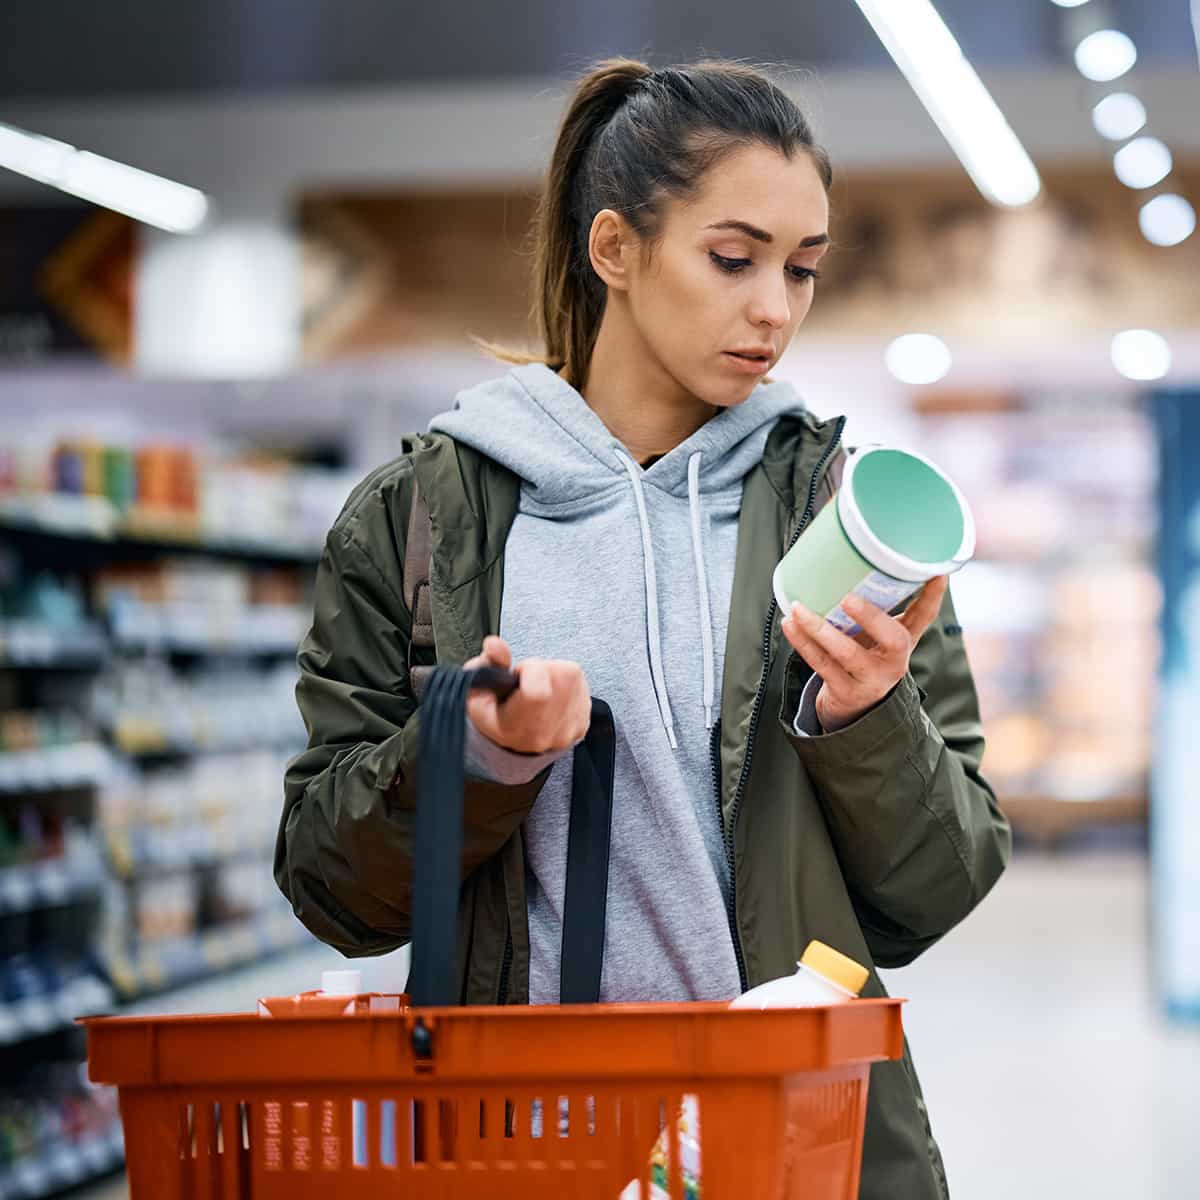 Junge Frau im Supermarkt betrachtet Lebensmittel